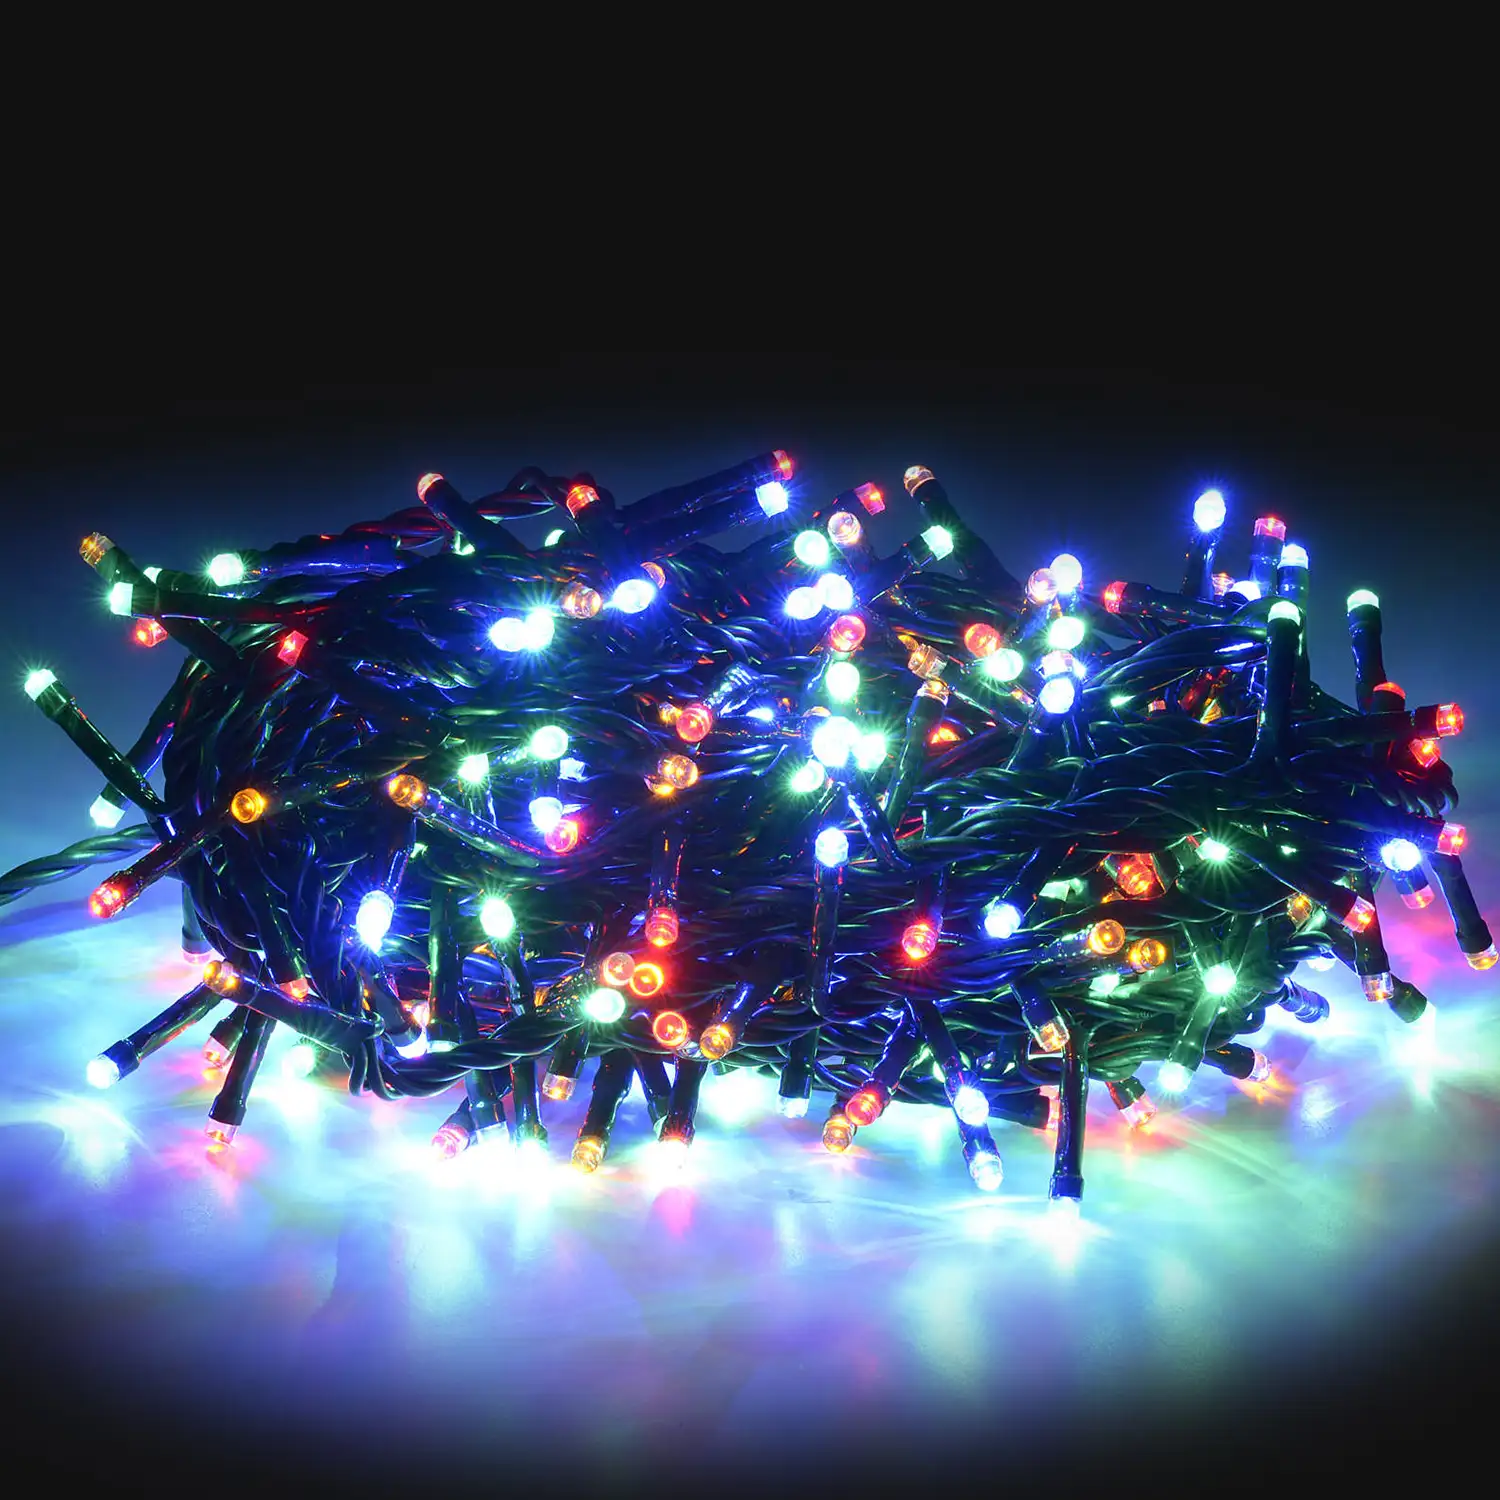 180 bombillas de luces LED multicolor 14,4 metros.